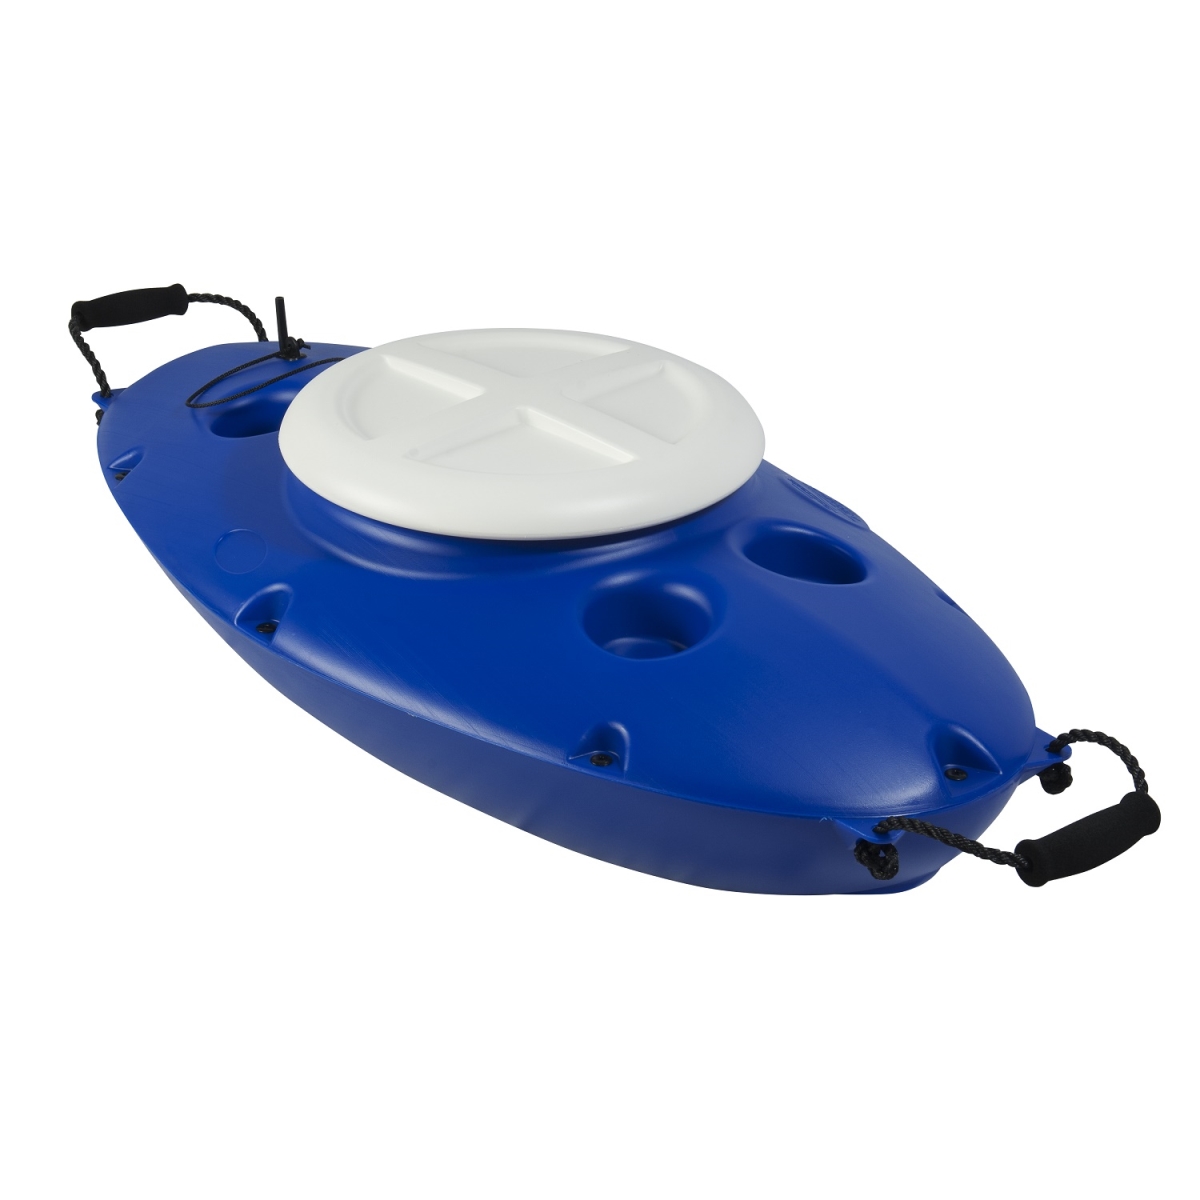 2160105 30 Qt Floating Cooler Storage Camping, Royal Blue